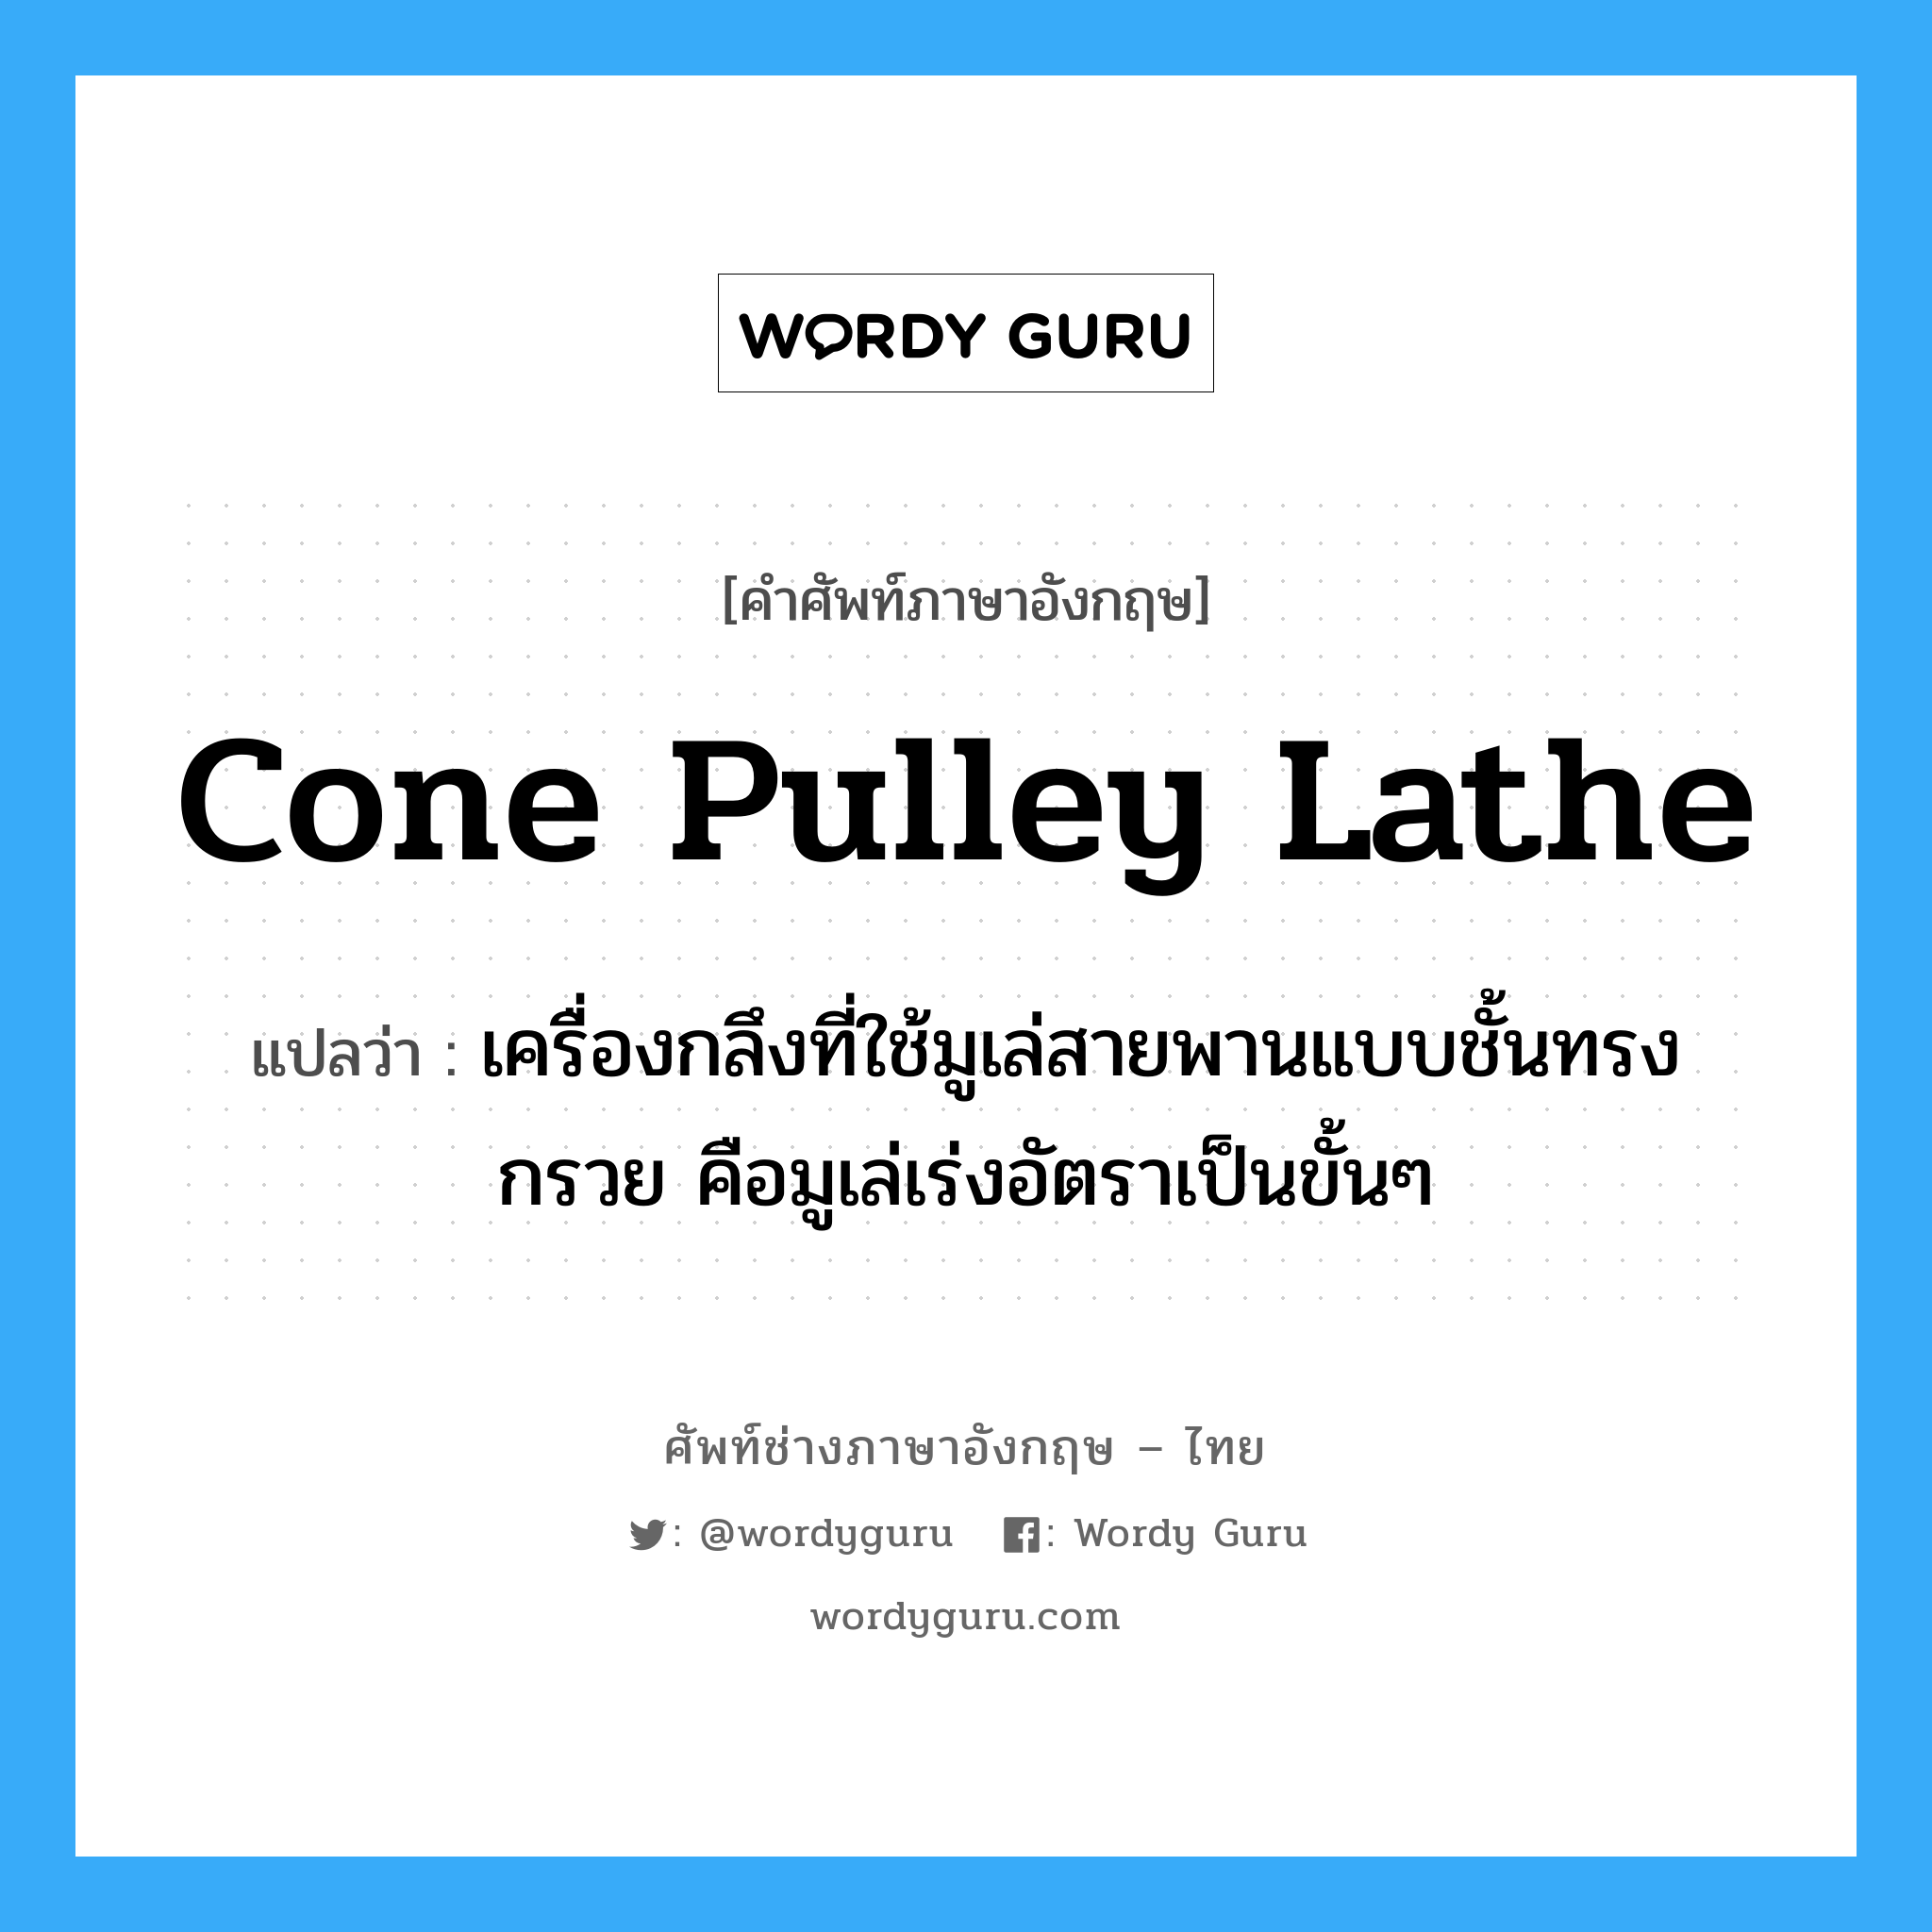 cone pulley lathe แปลว่า?, คำศัพท์ช่างภาษาอังกฤษ - ไทย cone pulley lathe คำศัพท์ภาษาอังกฤษ cone pulley lathe แปลว่า เครื่องกลึงที่ใช้มูเล่สายพานแบบชั้นทรงกรวย คือมูเล่เร่งอัตราเป็นขั้นๆ